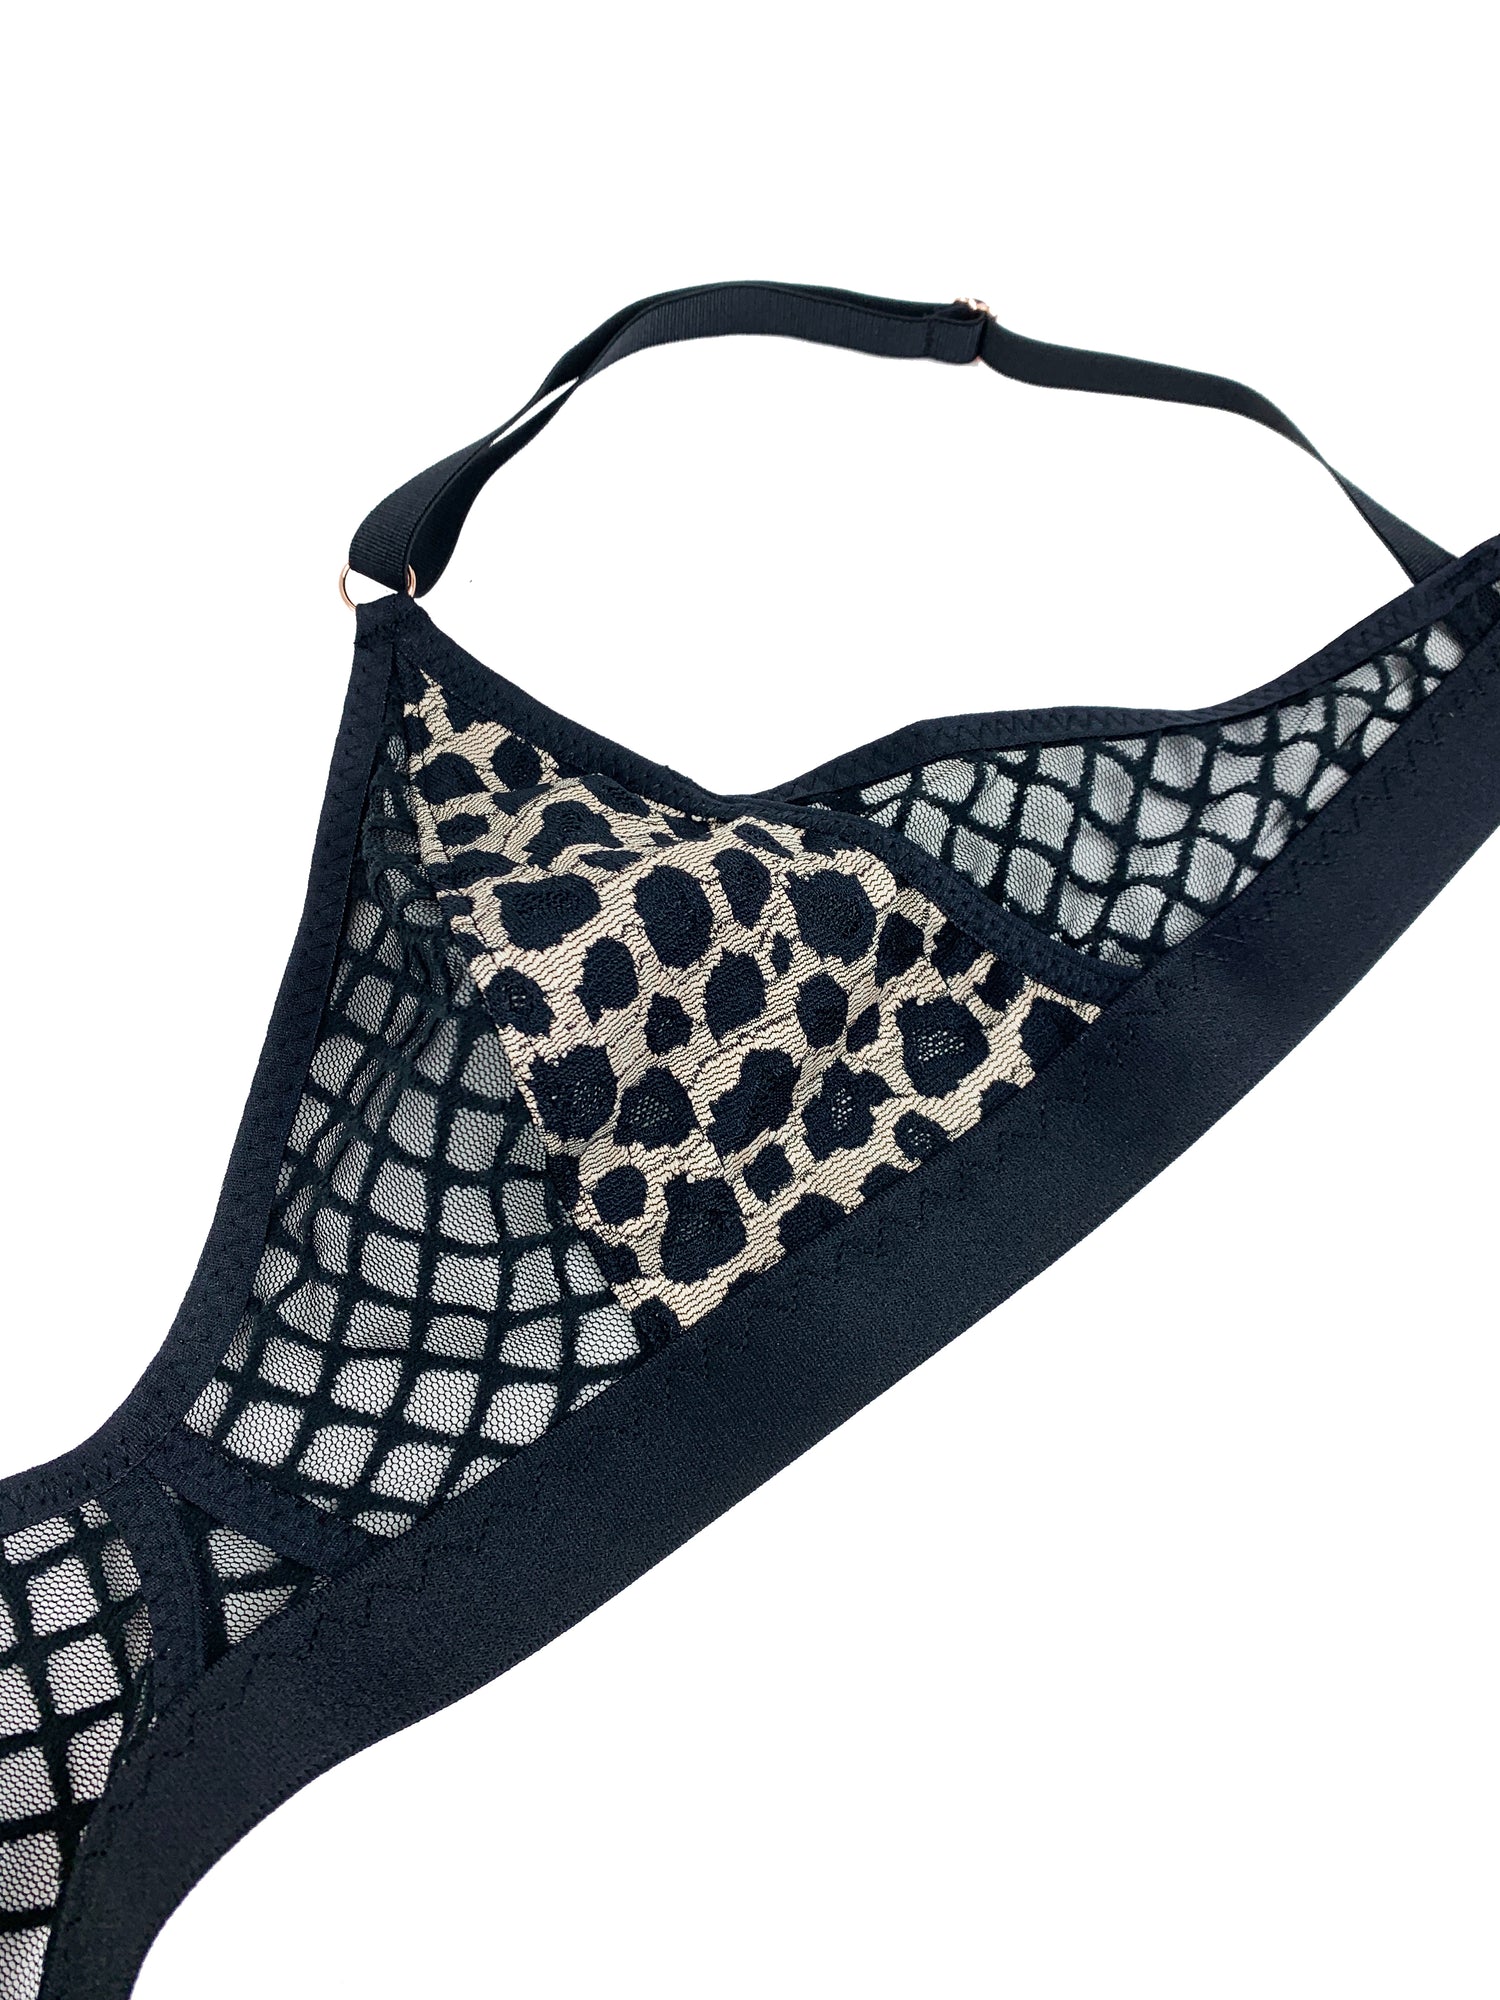 black leopard and mesh bra lingerie against white background